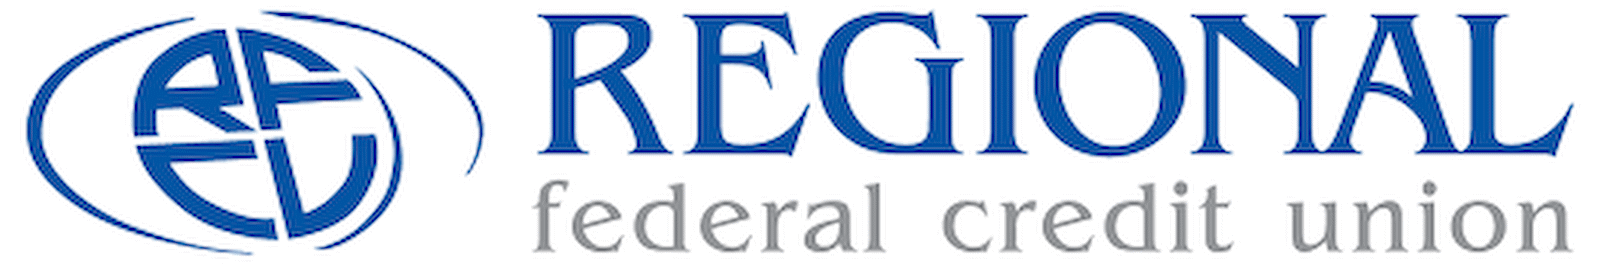 Regional Federal Credit Union